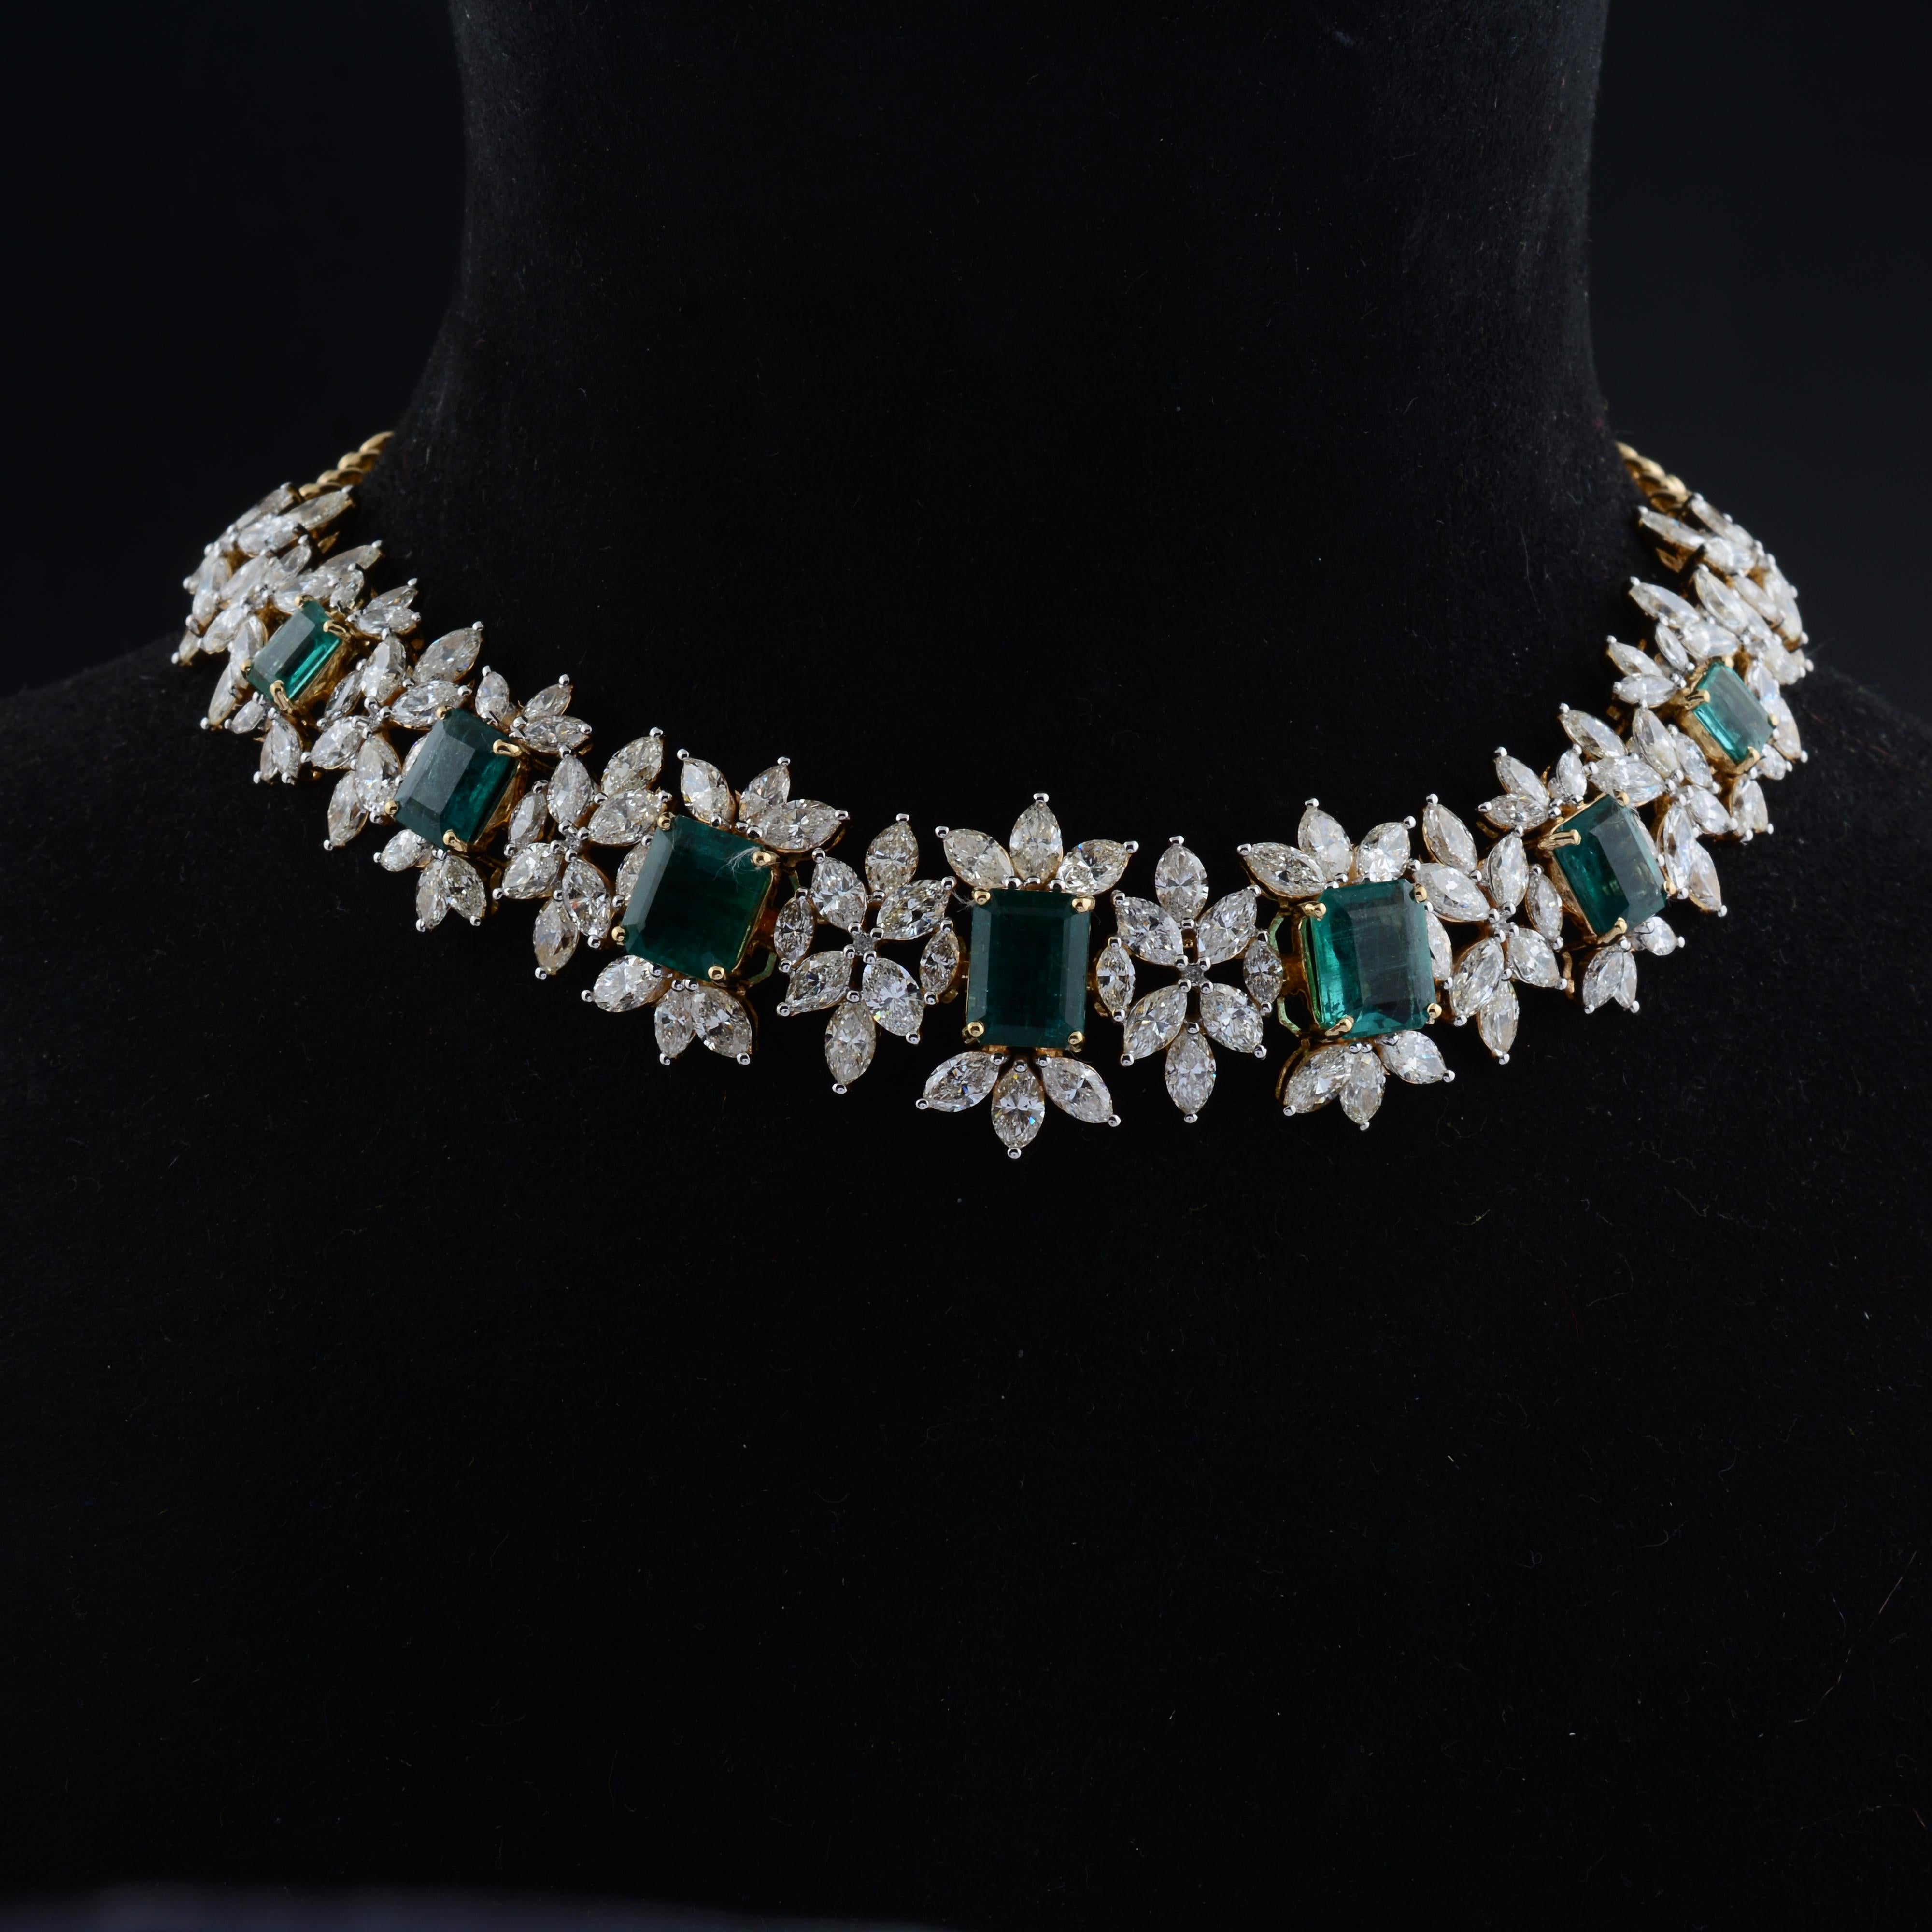 Im Mittelpunkt dieser Halskette steht der natürliche Smaragd-Edelstein. Mit seinem satten Grün und seiner außergewöhnlichen Klarheit strahlt der Smaragd Eleganz und natürliche Anziehungskraft aus. Jeder Smaragd wird sorgfältig nach seiner